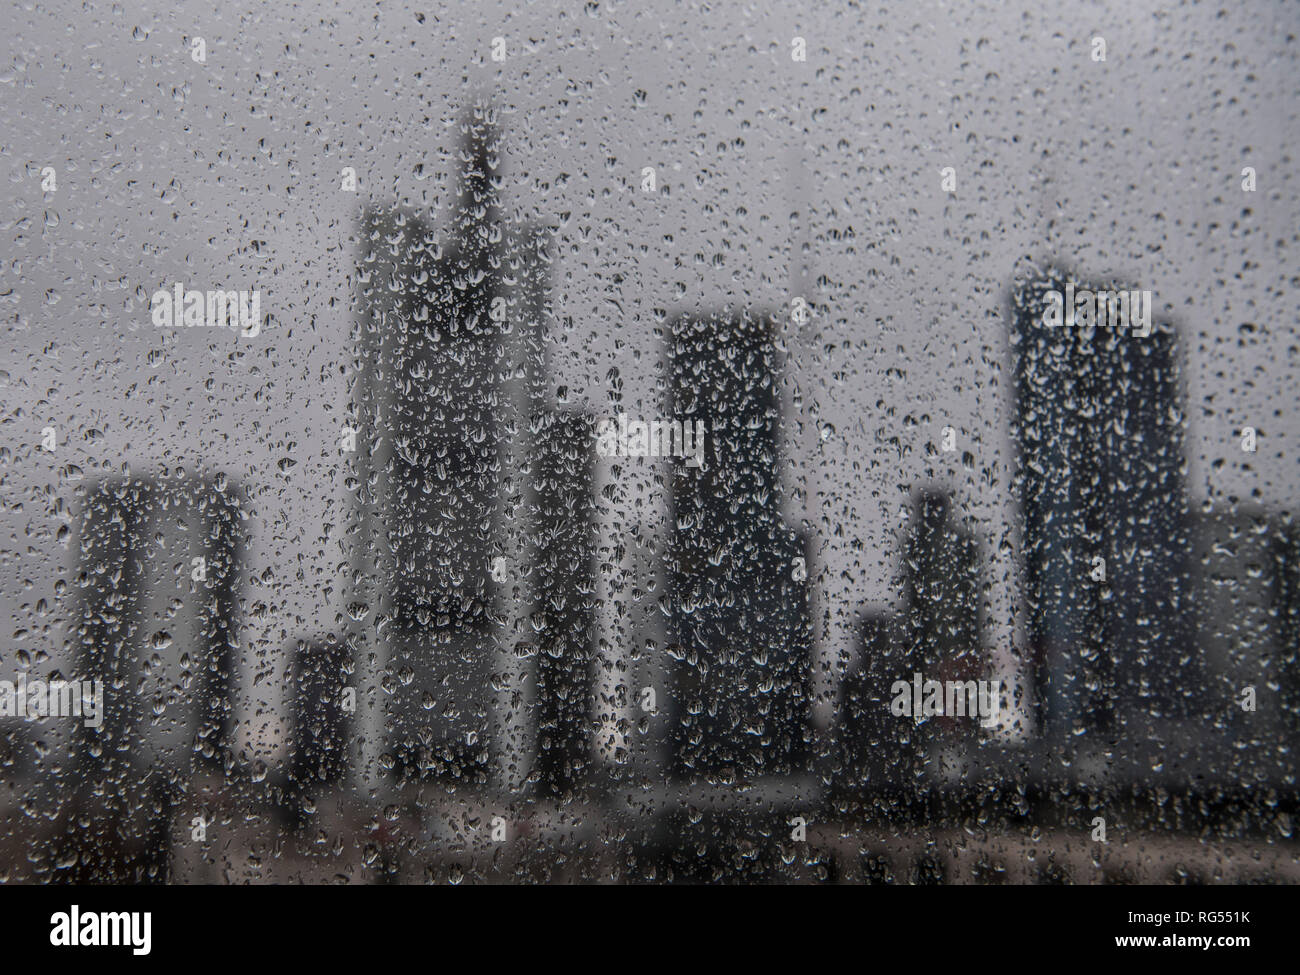 28 Januar 2019, Hessen, Frankfurt/Main: Regen Tropen auf eine Glasscheibe lassen sie die Skyline der Innenstadt in den Hintergrund. Mit Temperaturen wieder Fallenlassen, das Wetter sollte weiterhin seine unbequeme Seite in den kommenden Tagen zeigen. Foto: Boris Roessler/dpa Stockfoto